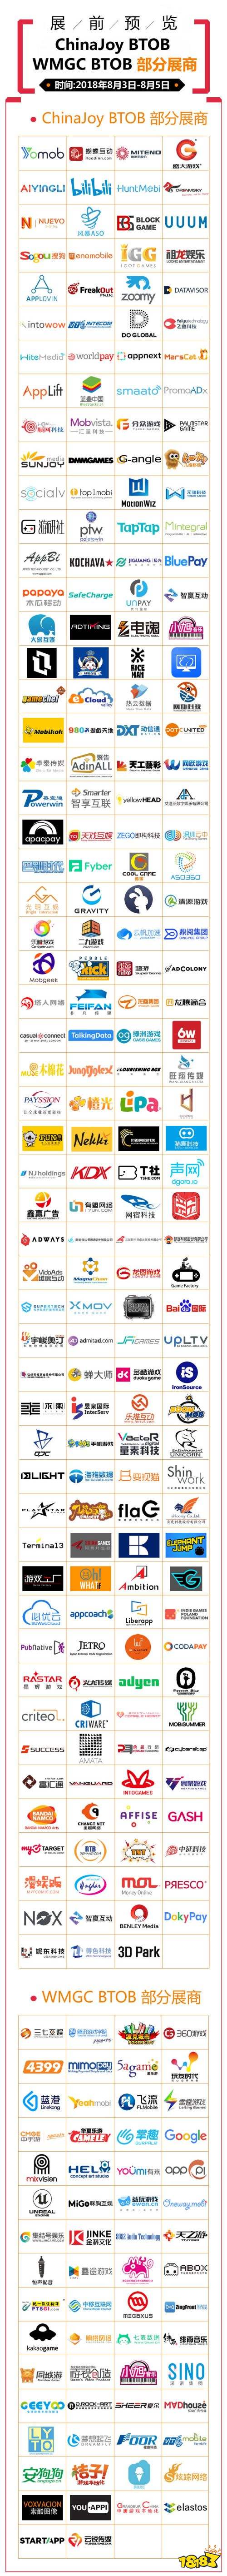 2018年第十六届ChinaJoy展前预览（BTOB篇）正式发布！